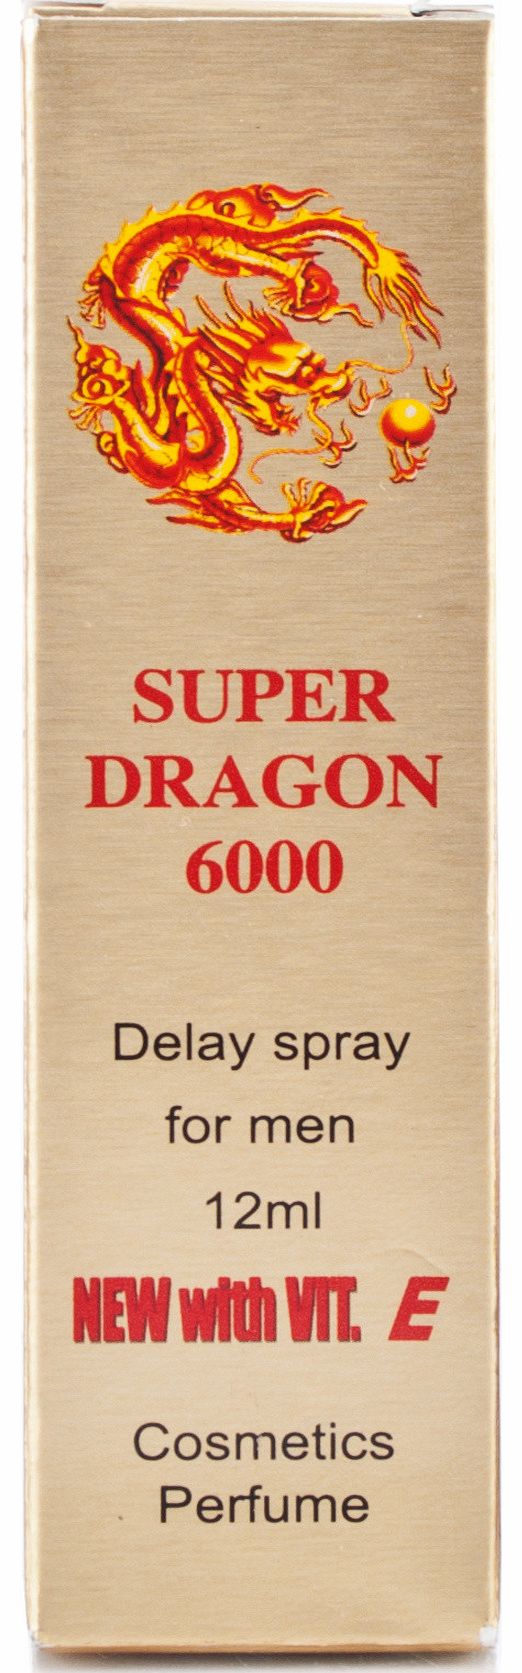 Dragon 6000 Delay Spray - 12ml